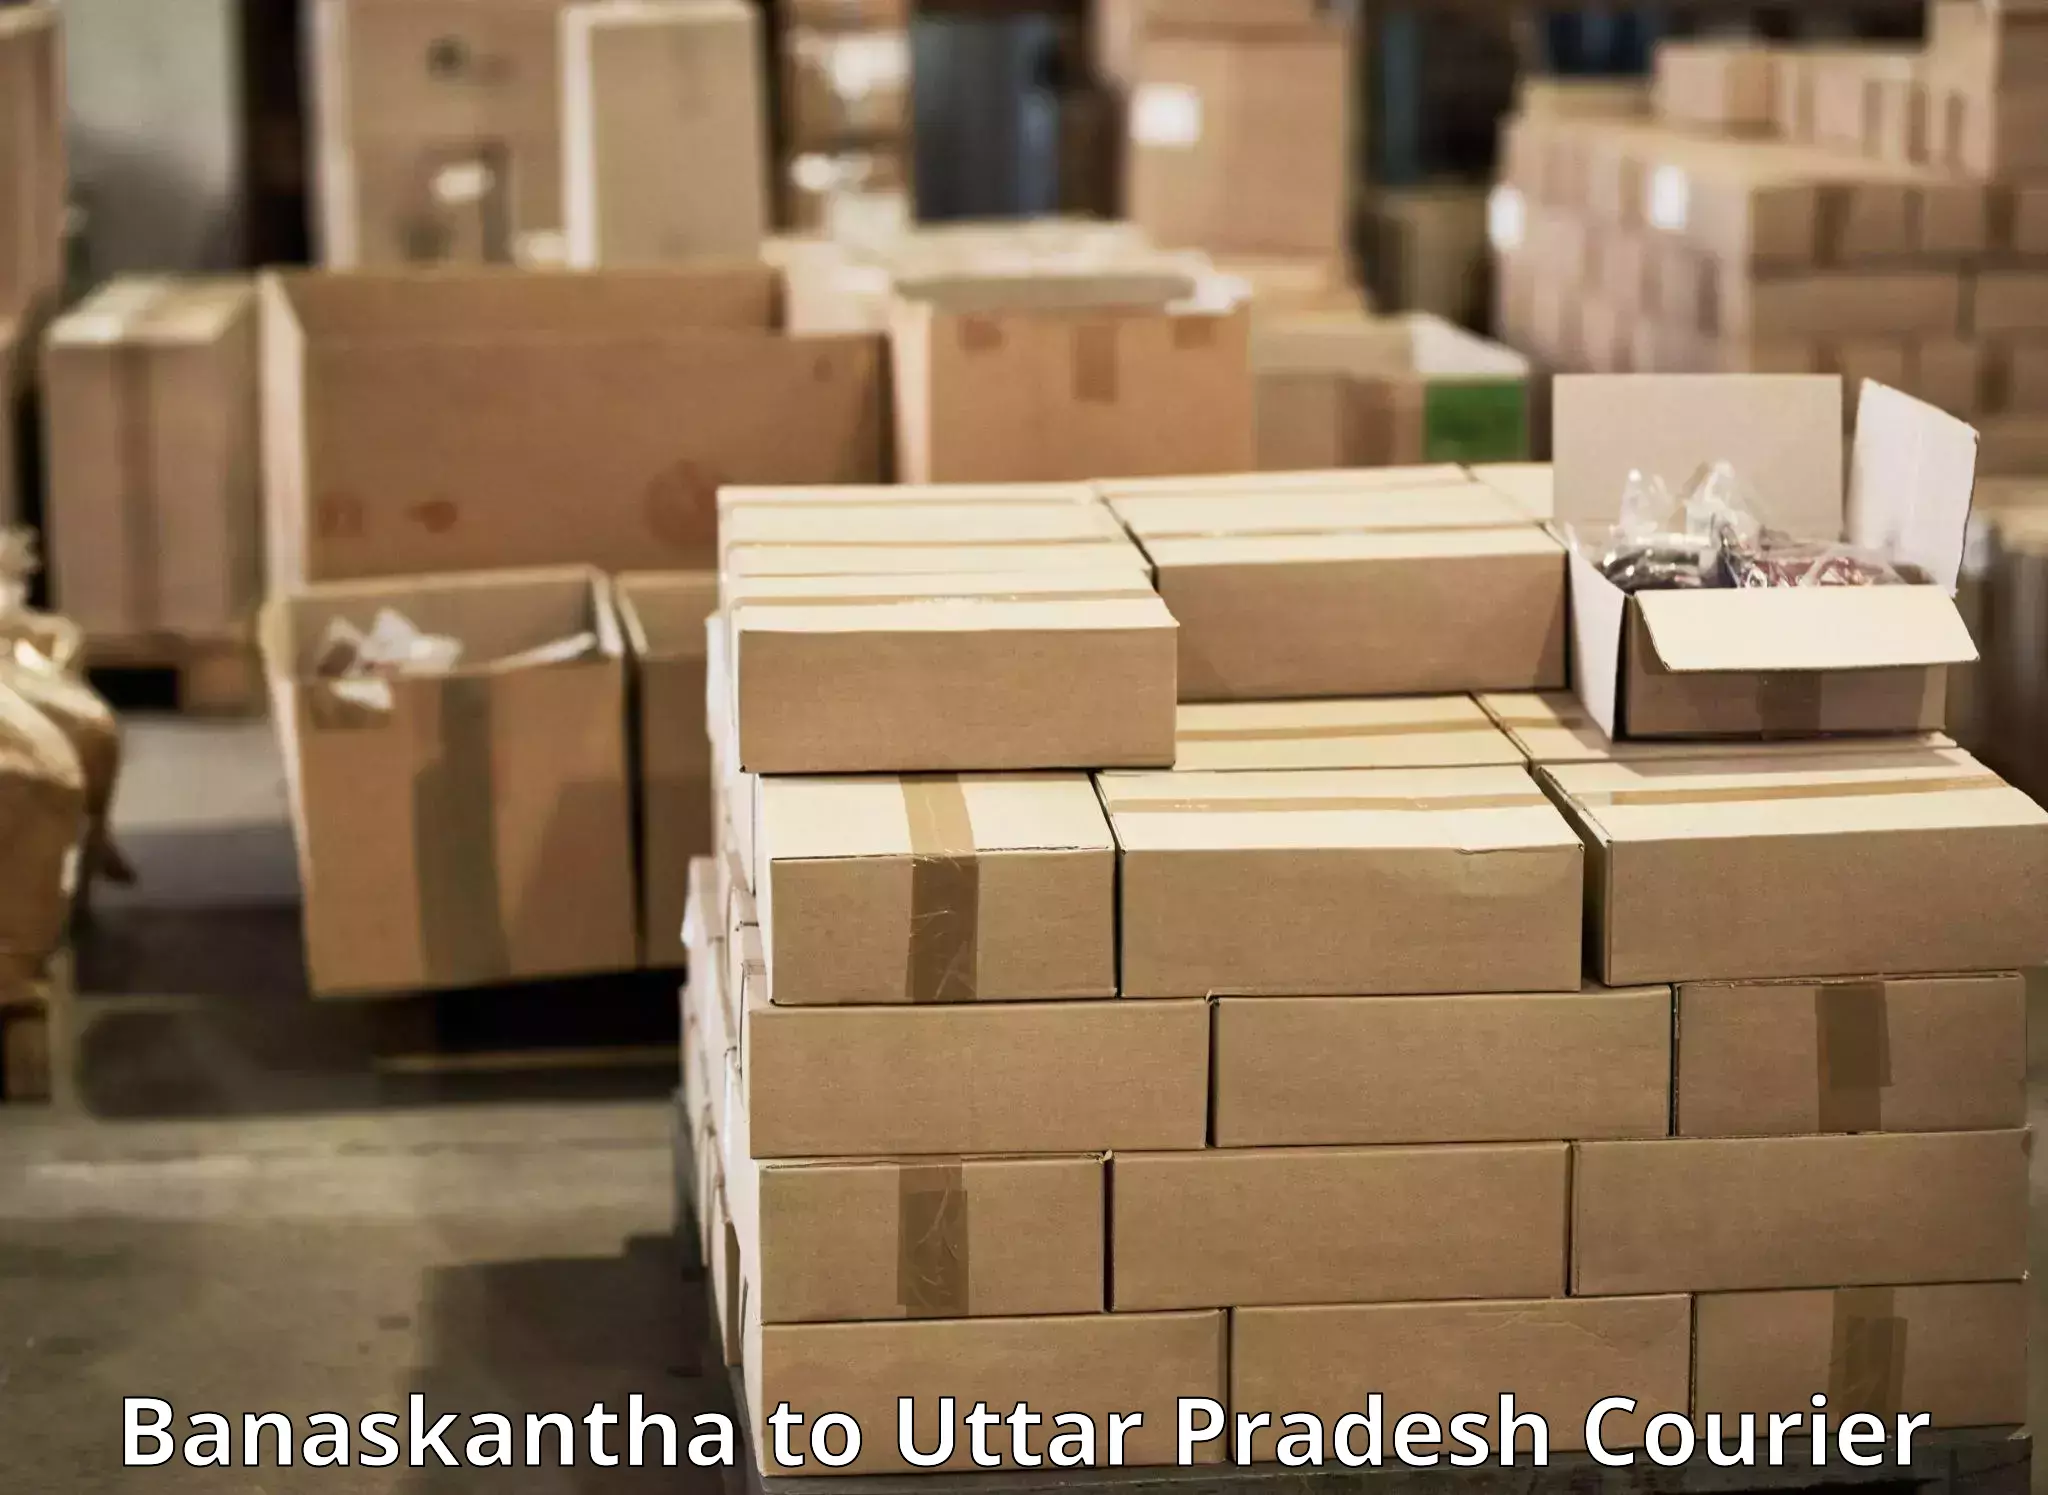 Cash on delivery service Banaskantha to Amethi